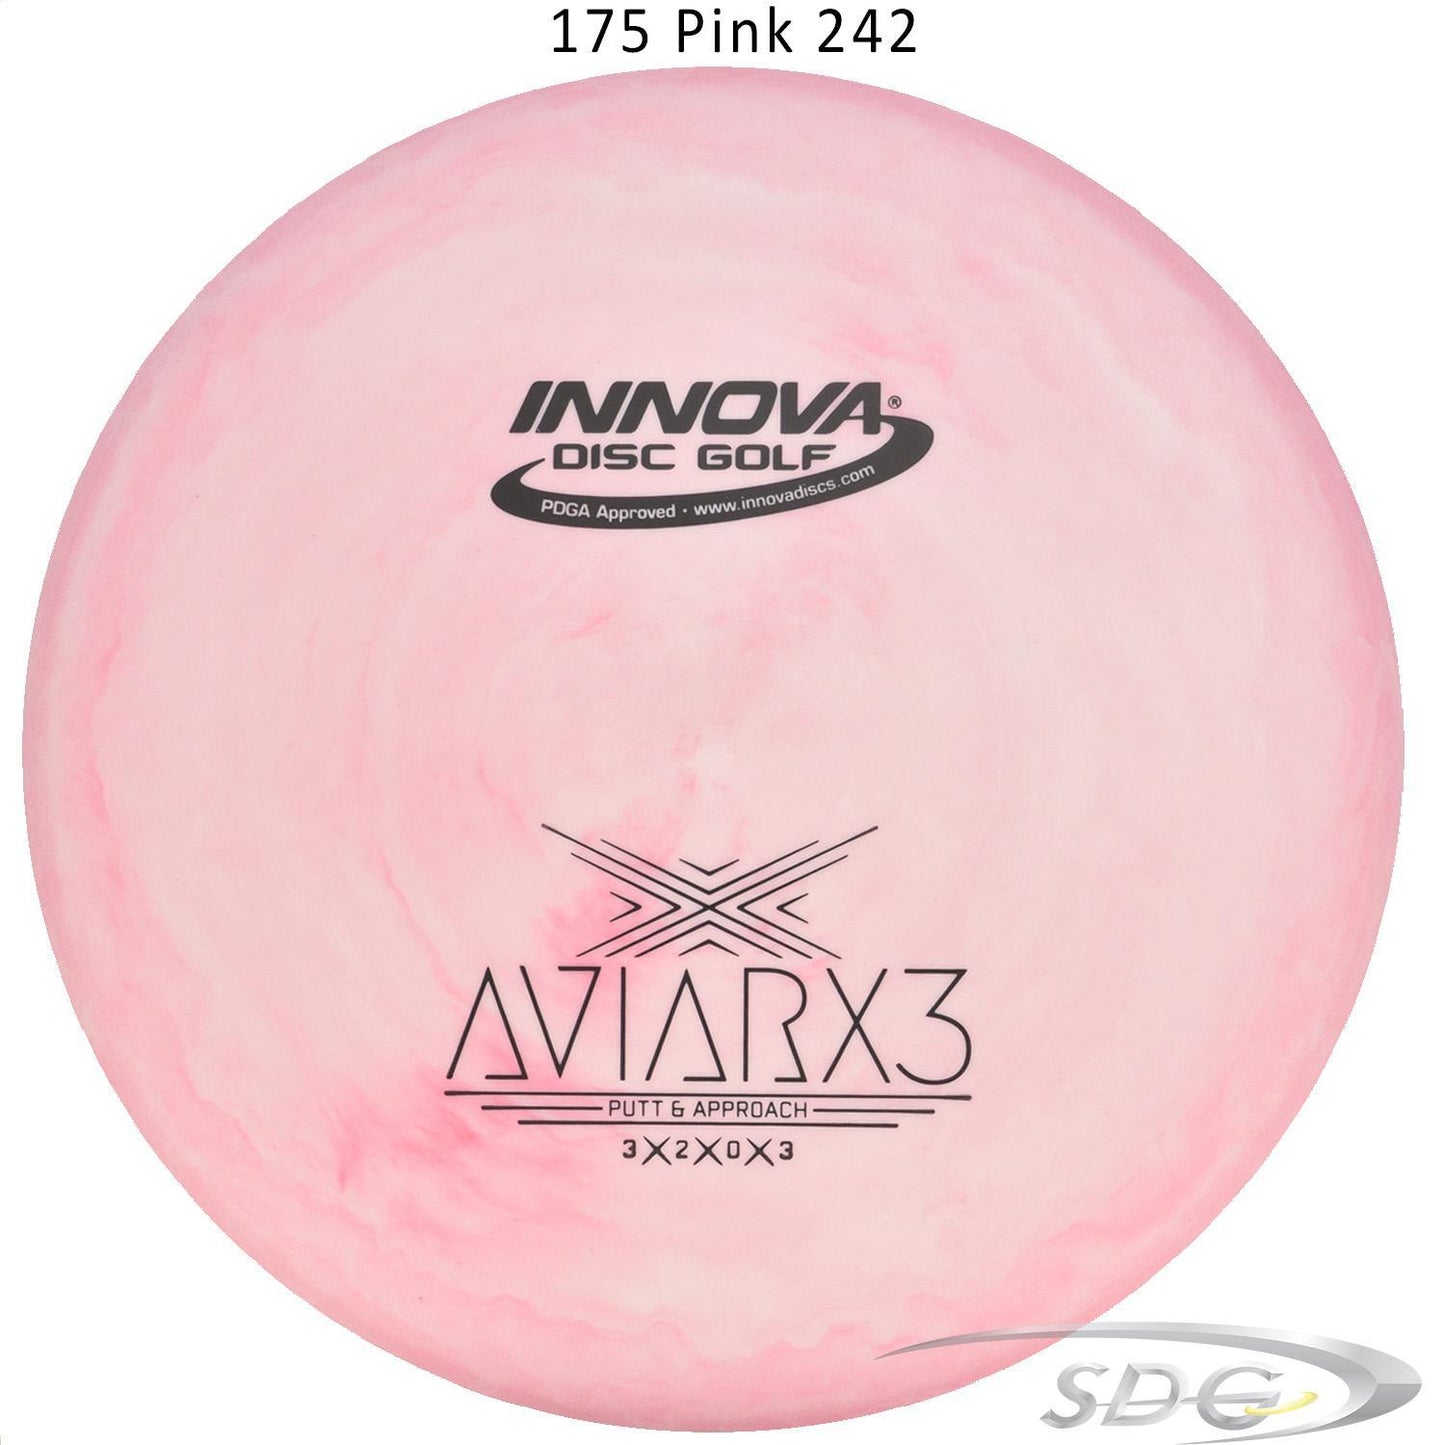 innova-dx-aviarx3-disc-golf-putter 175 Pink 242 